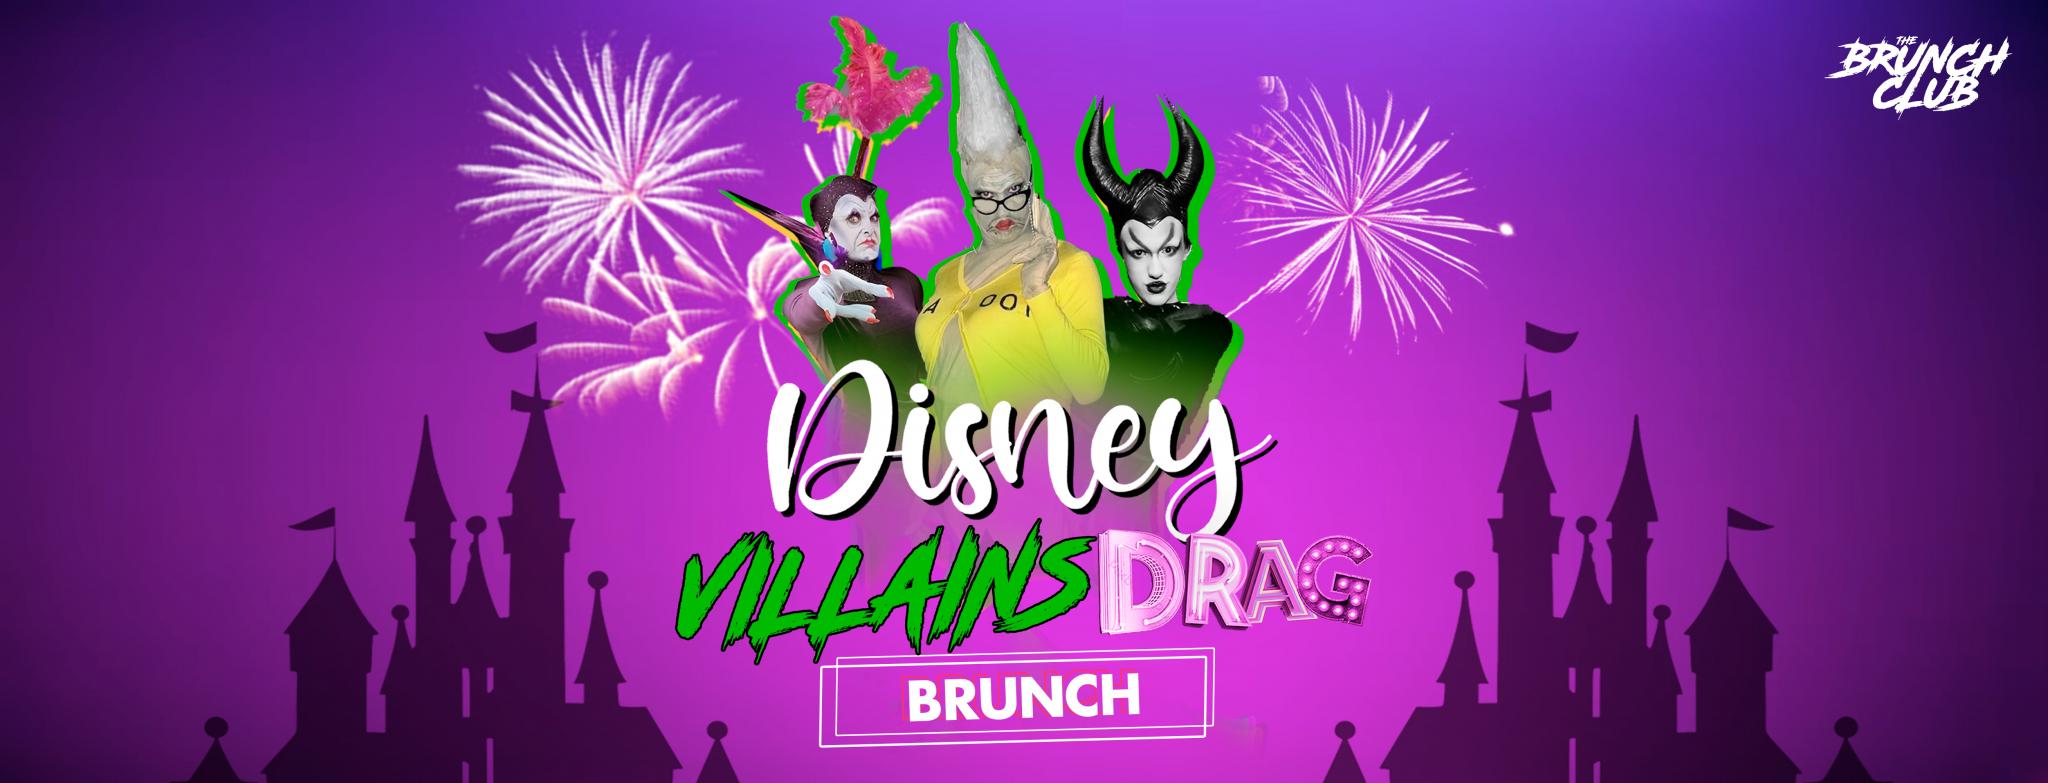 Disney Villains Drag Bottomless Brunch - Ipswich